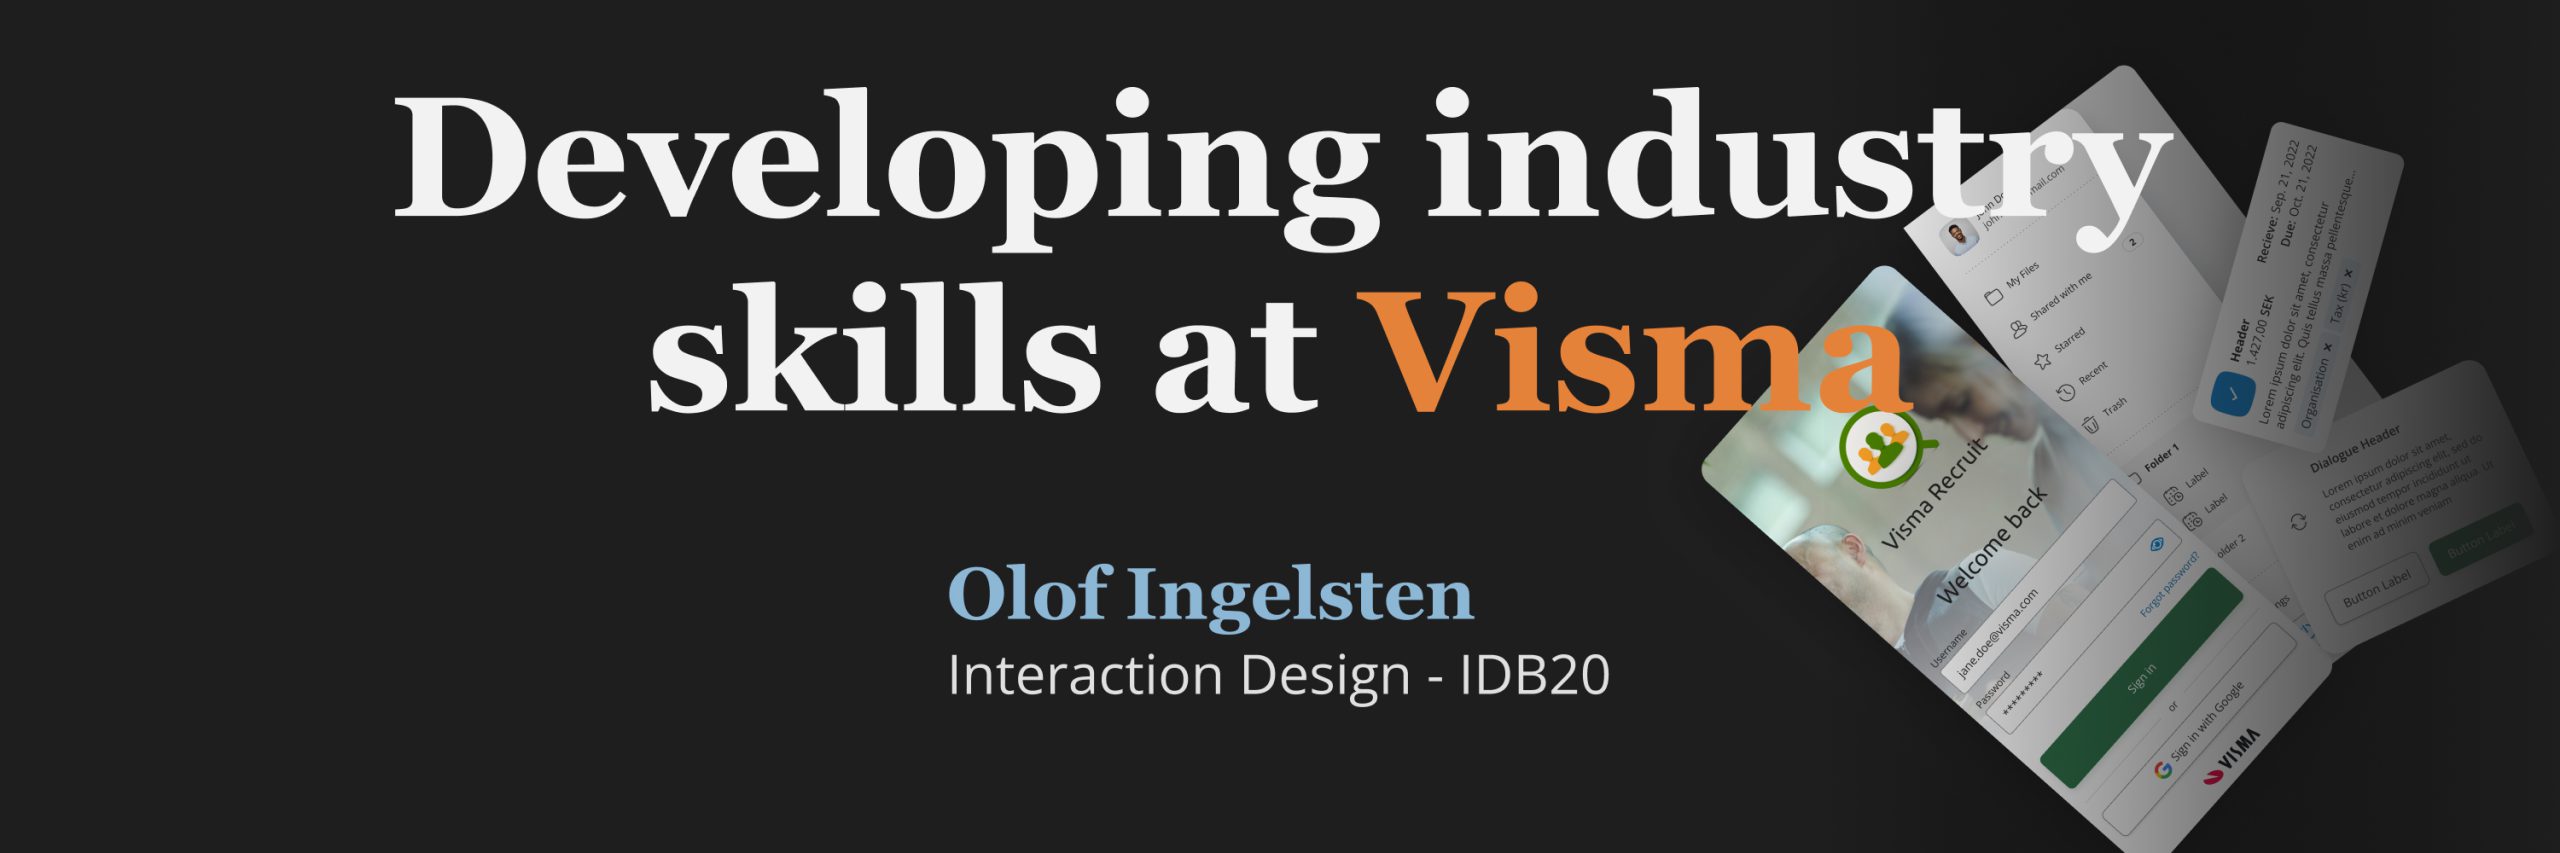 Olof Ingelsten – Developing industry skills at Visma